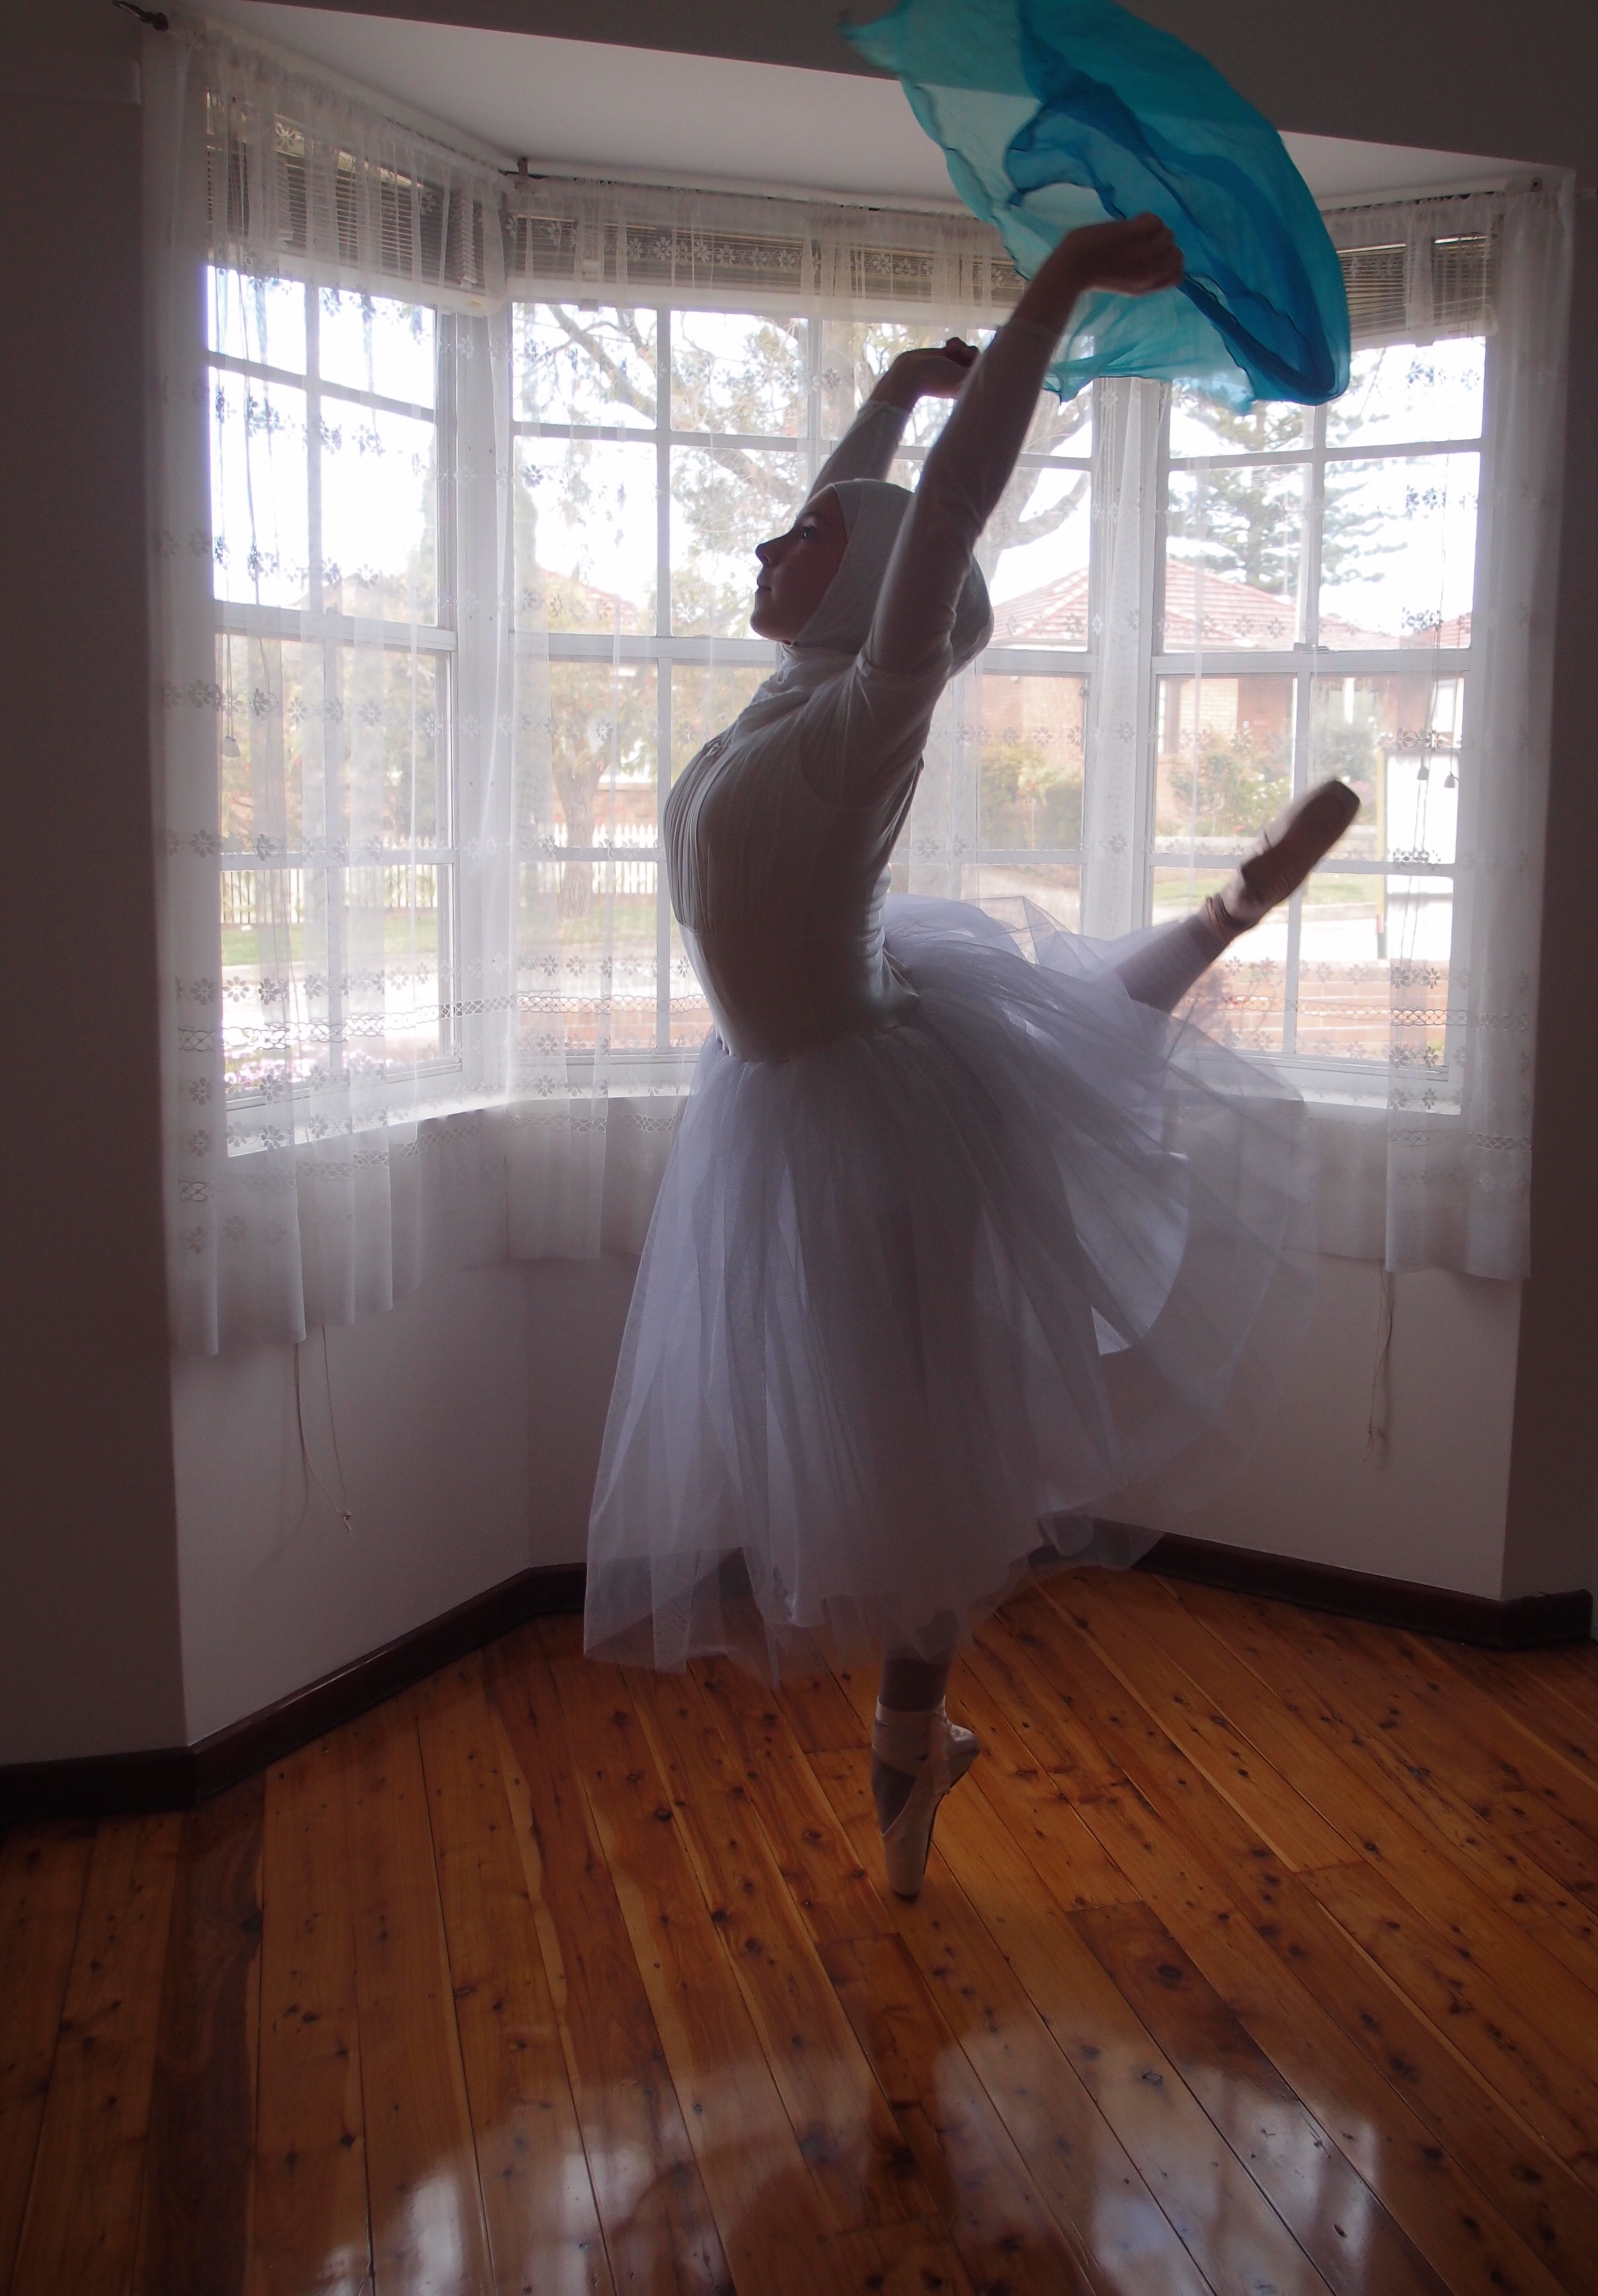 Legnagyobb álma, hogy balerina lehessen, hidzsábban